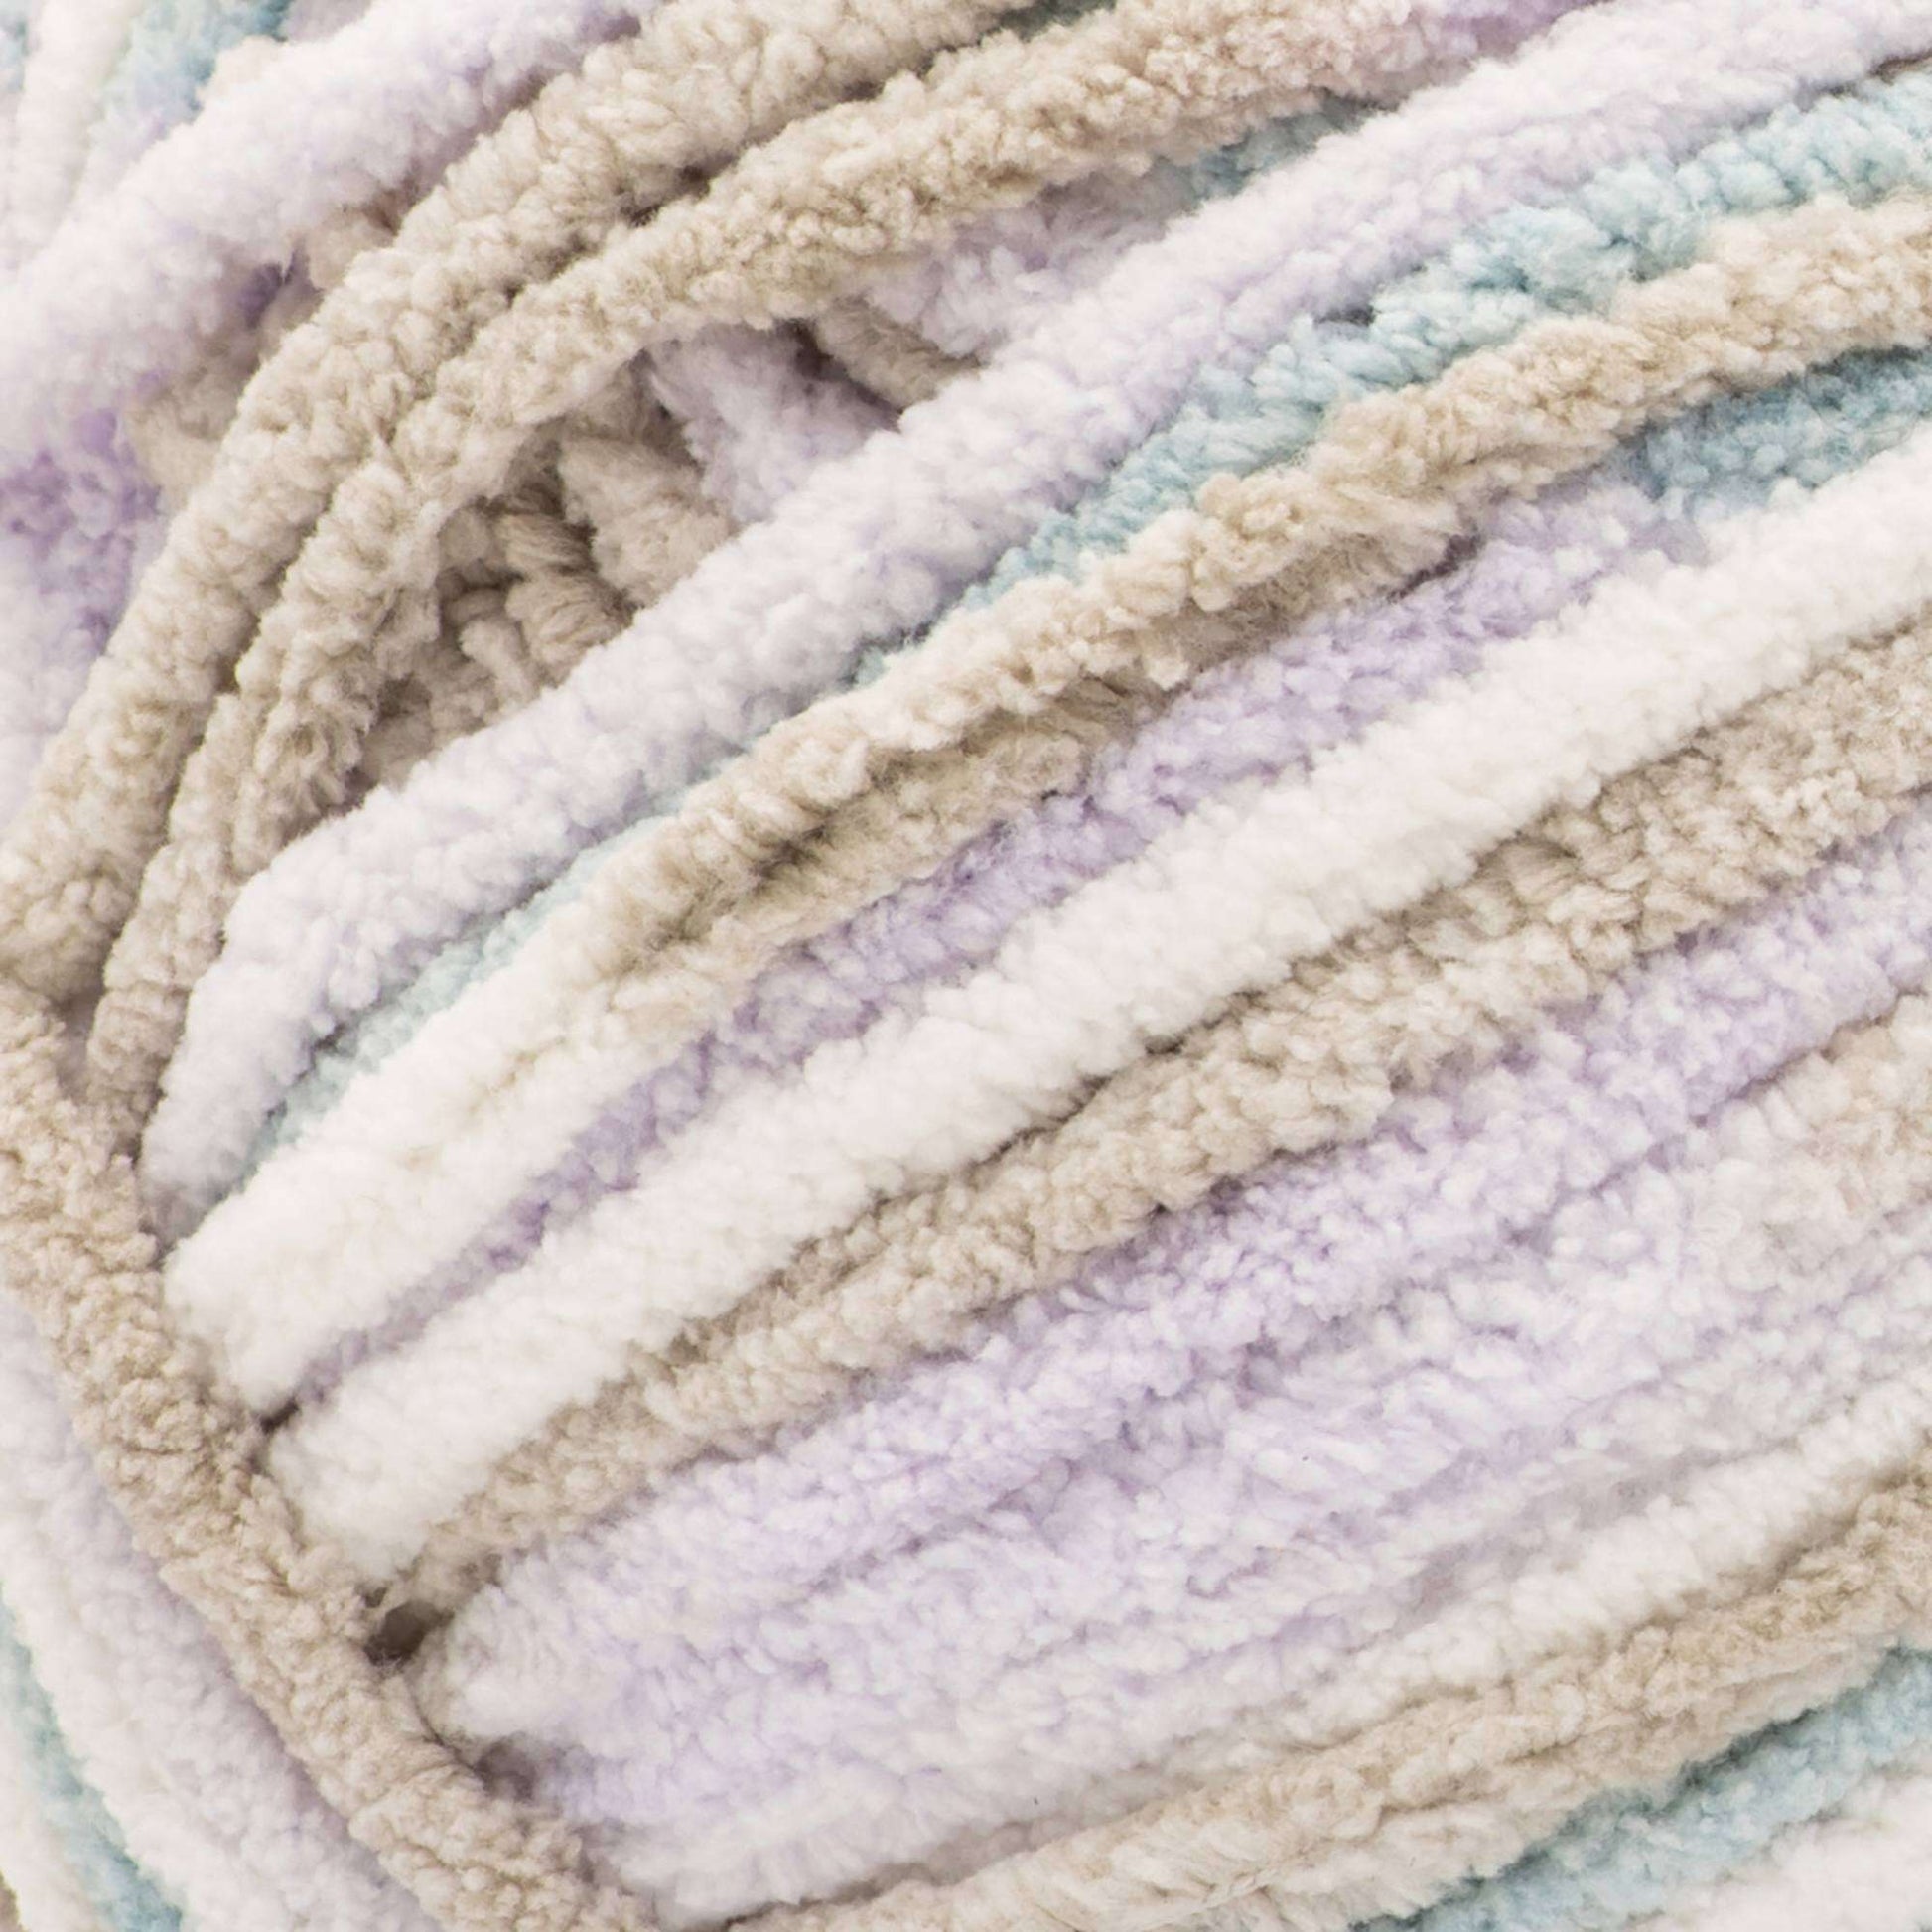 Baby blanket — Yarn Phase